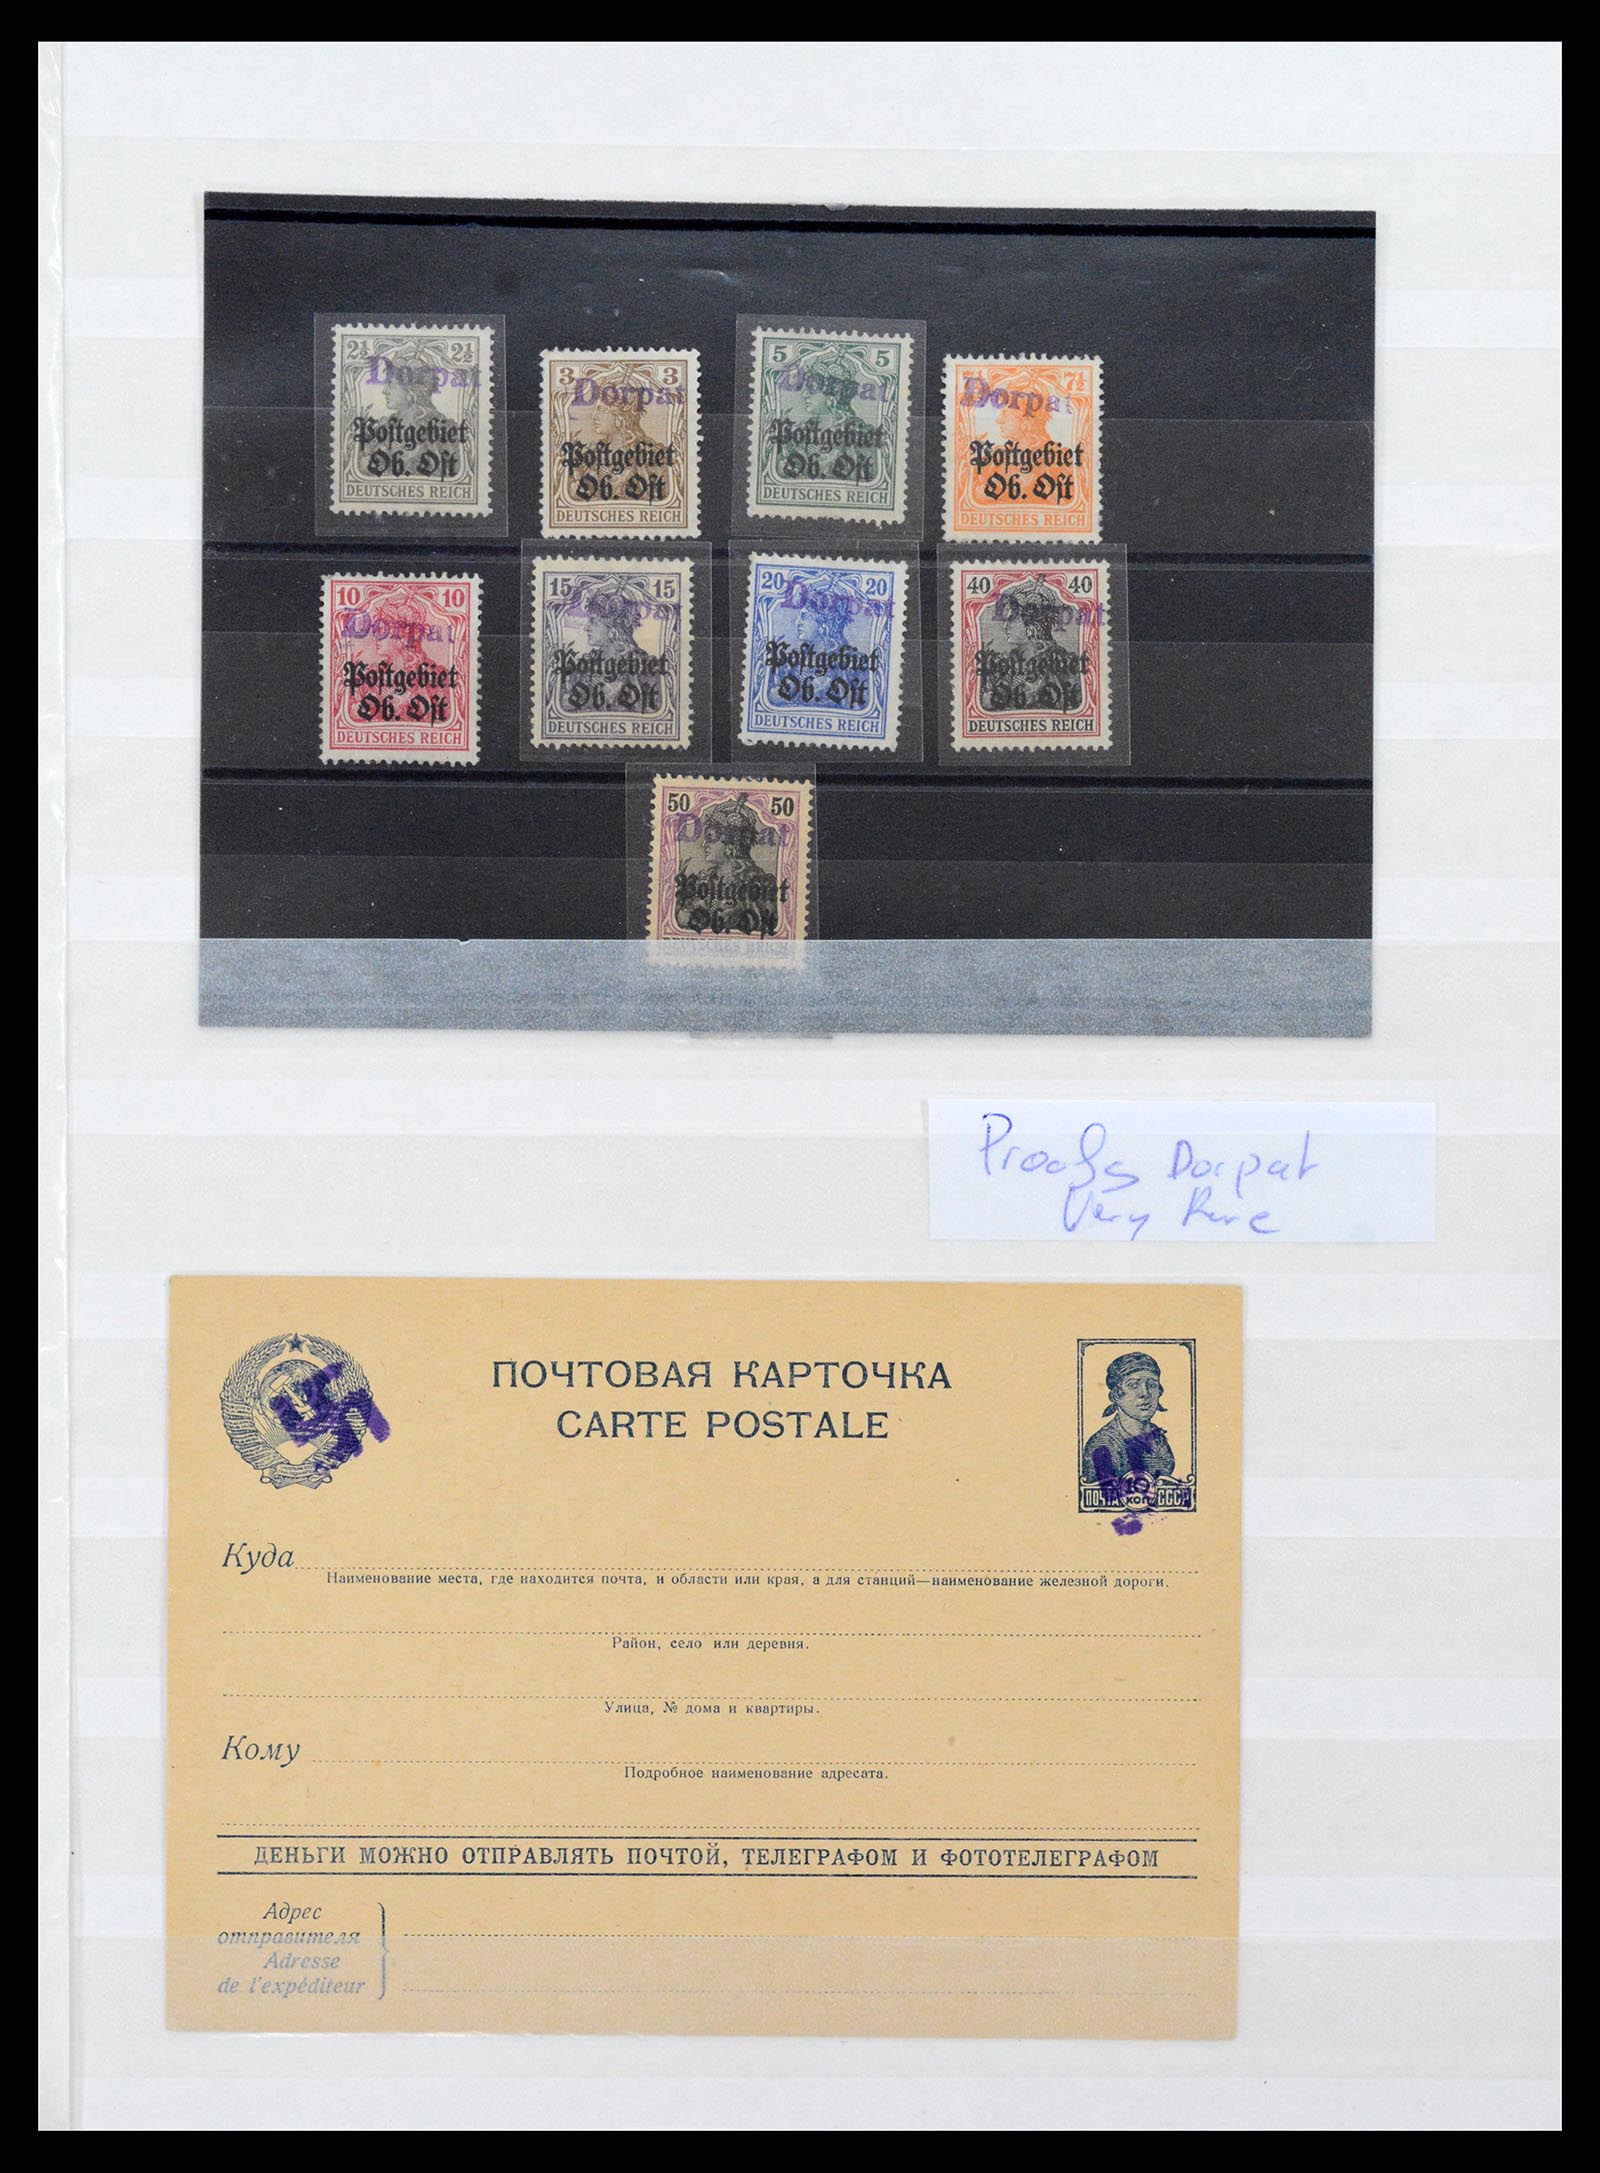 37690 009 - Stamp collection 37690 German occupation 2nd worldwar 1939-1945.